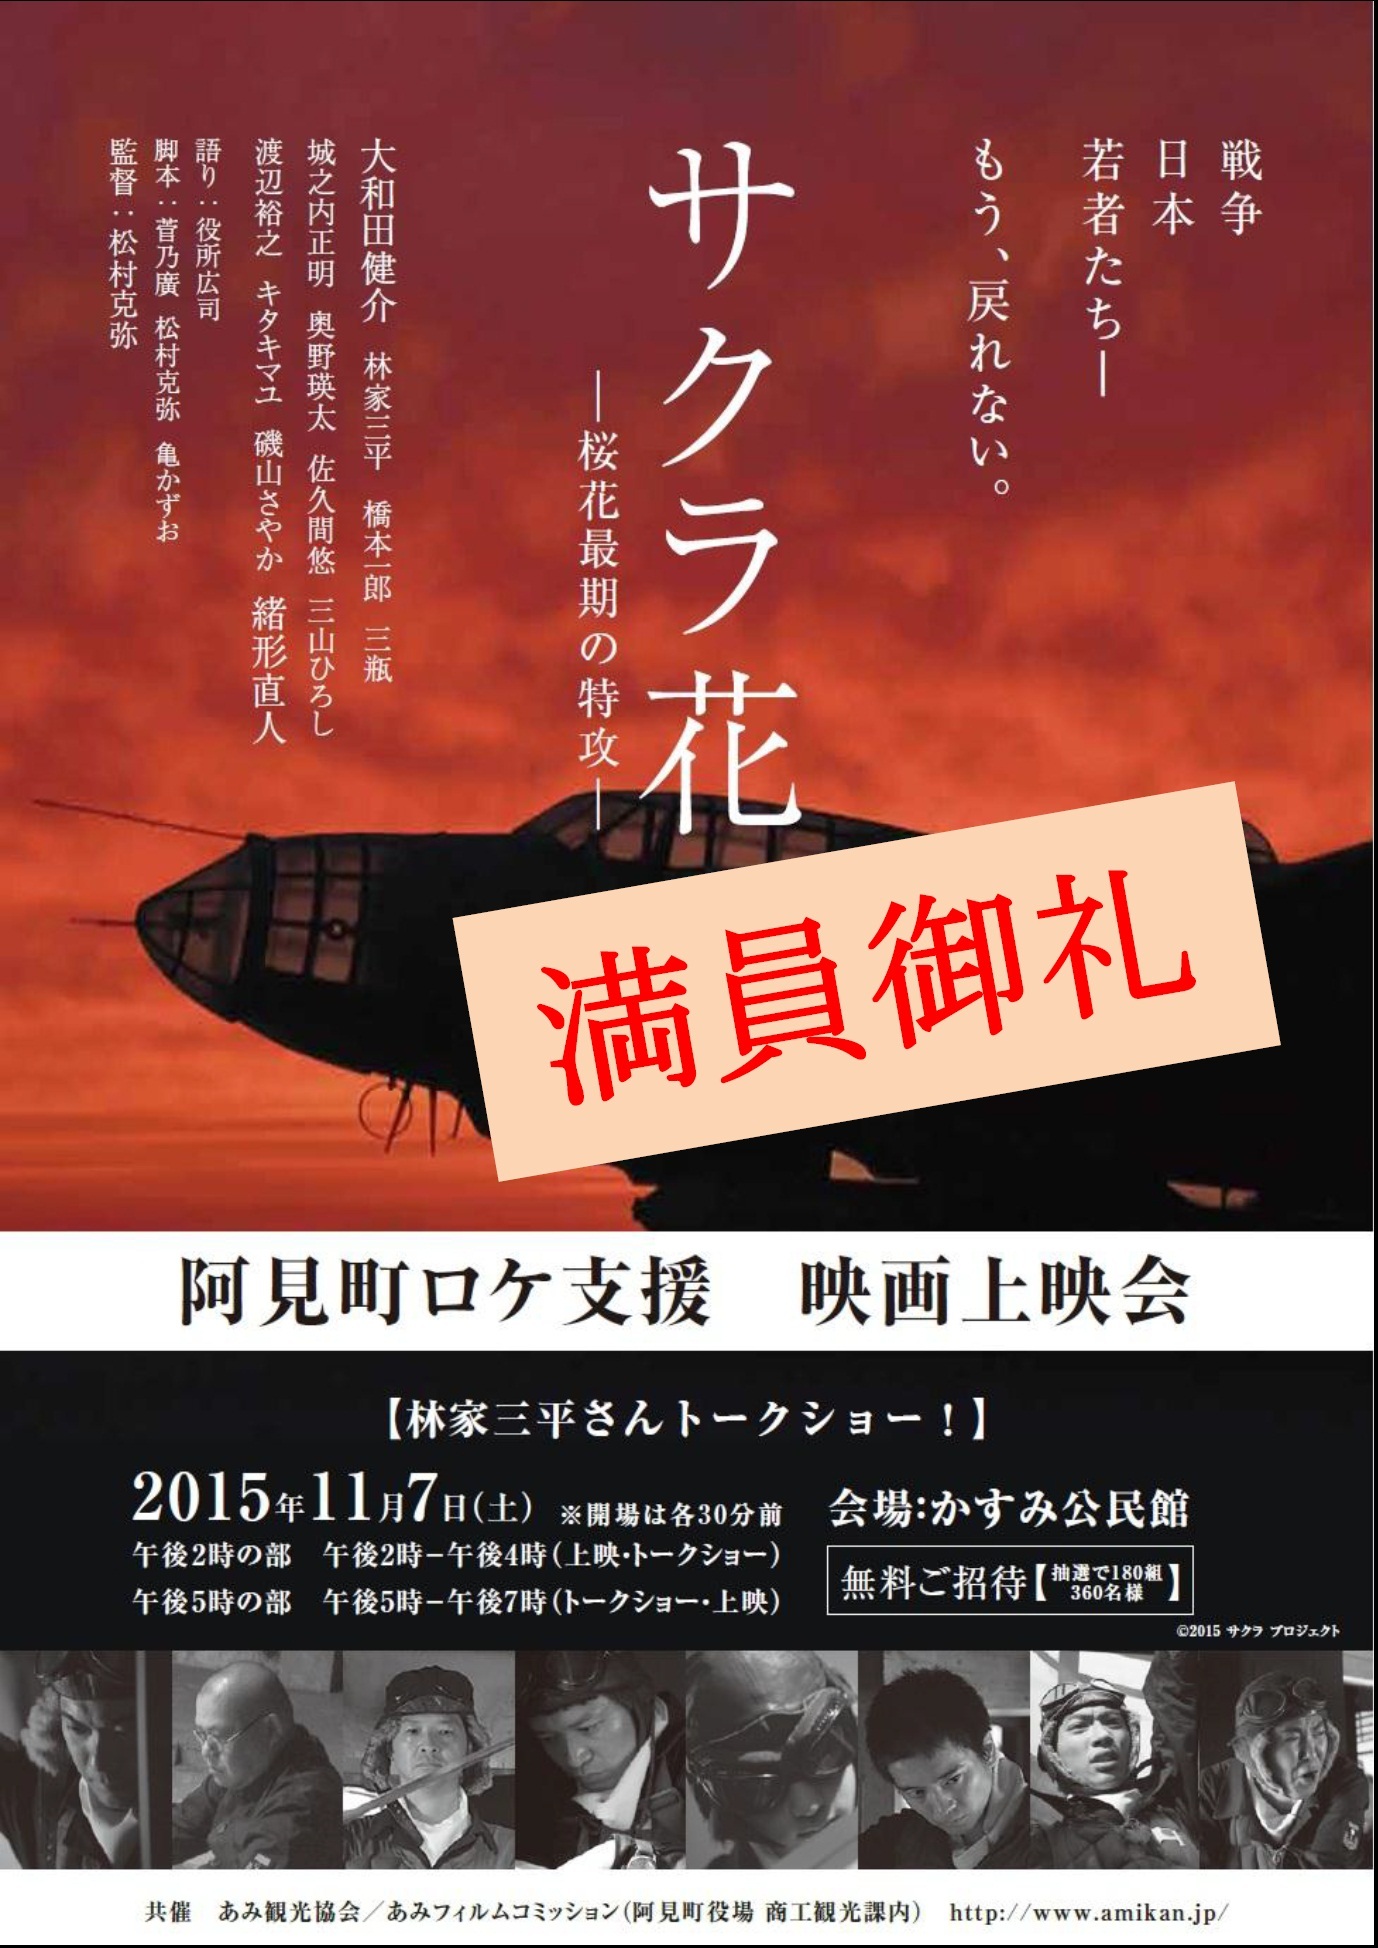 阿見町ロケ支援映画 サクラ花 桜花最期の特攻 の上映会を開催します 茨城県阿見町ホームページ